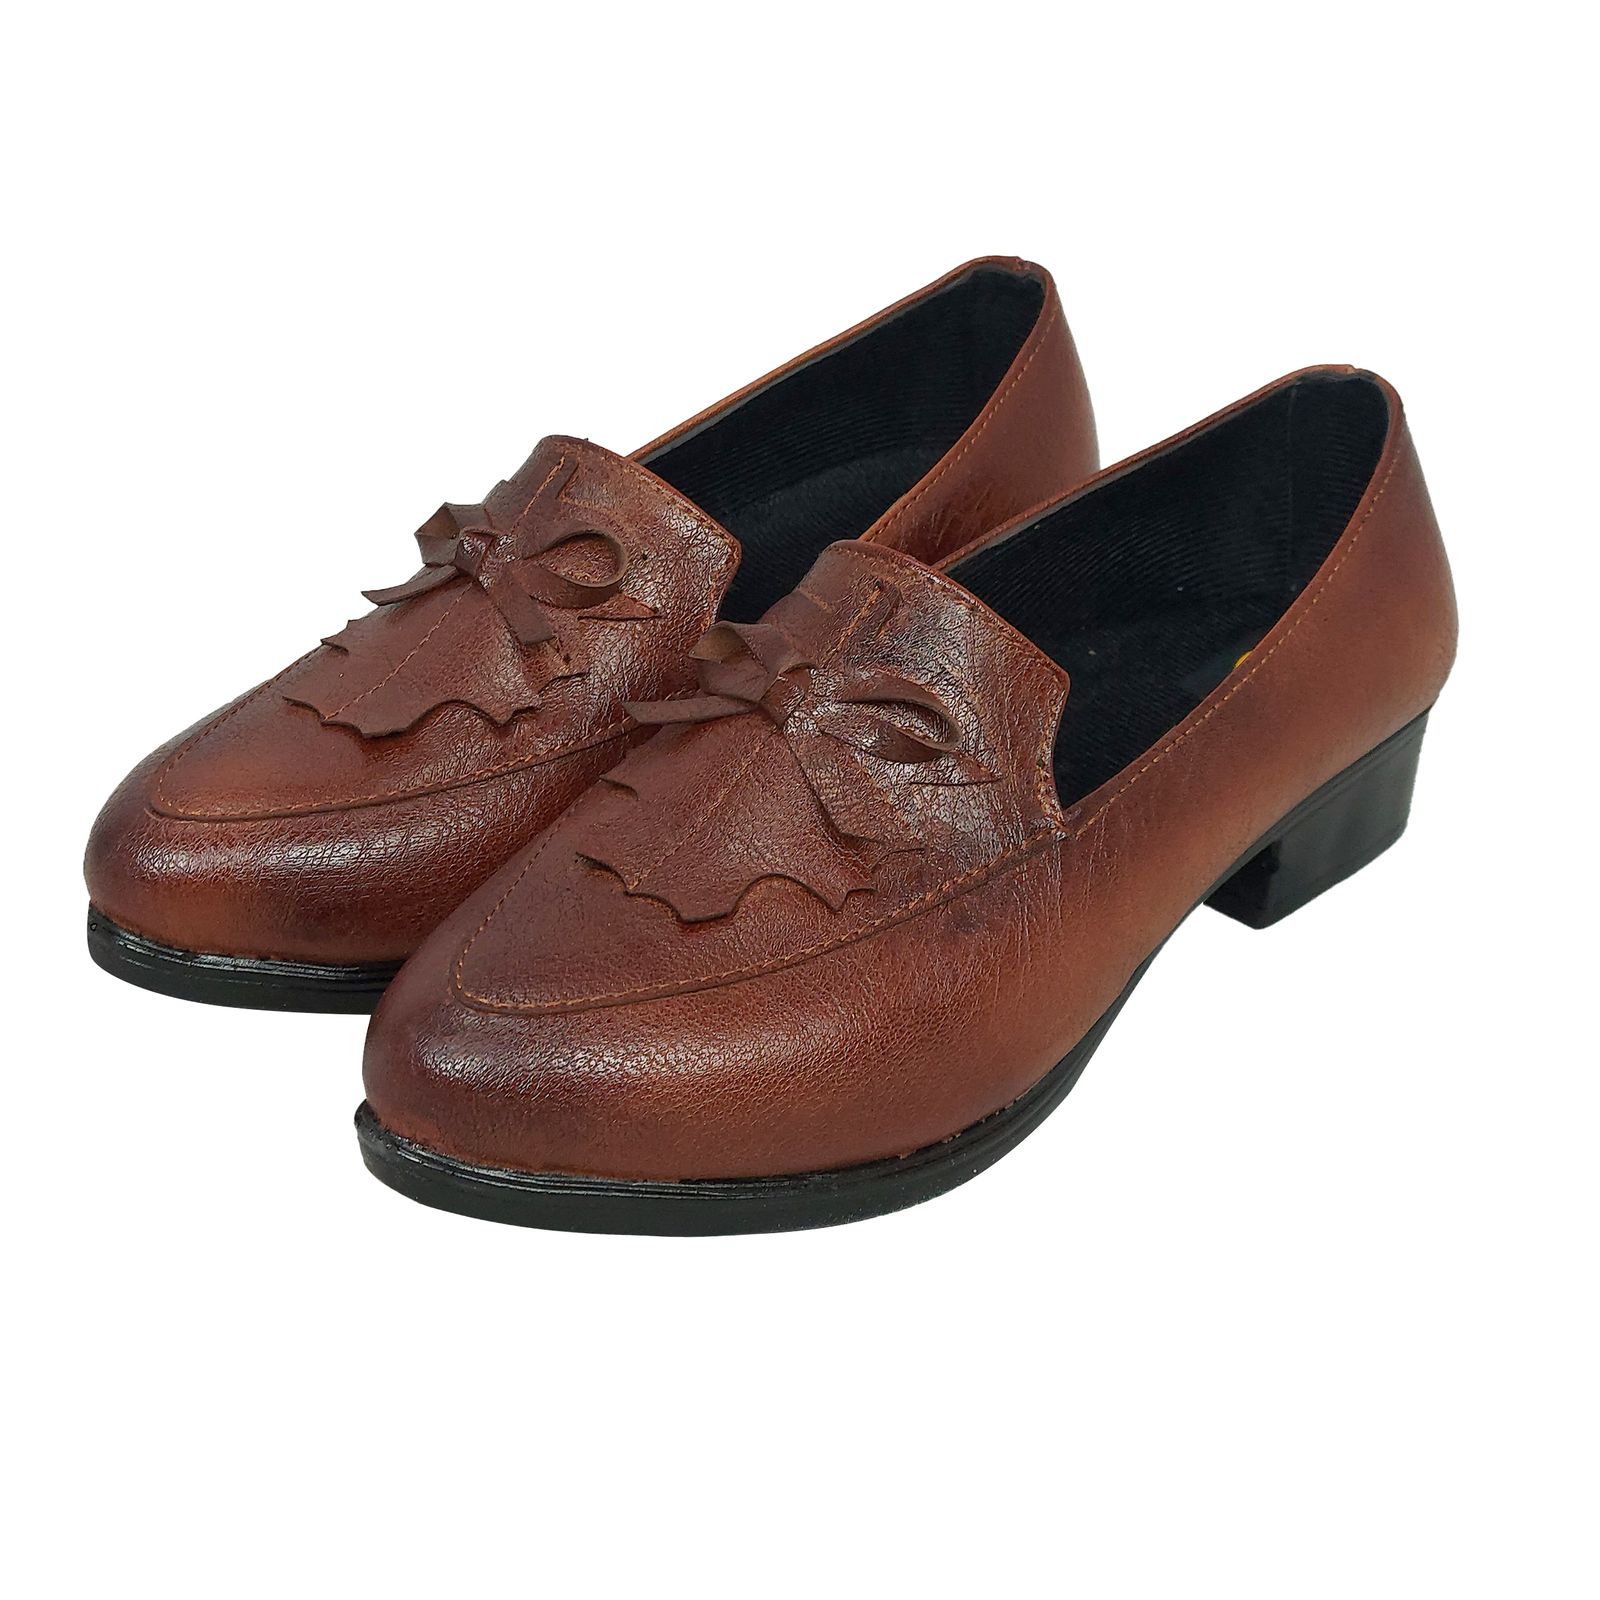 کفش زنانه سیی مدل چرم برگی کد 1861 -  - 2